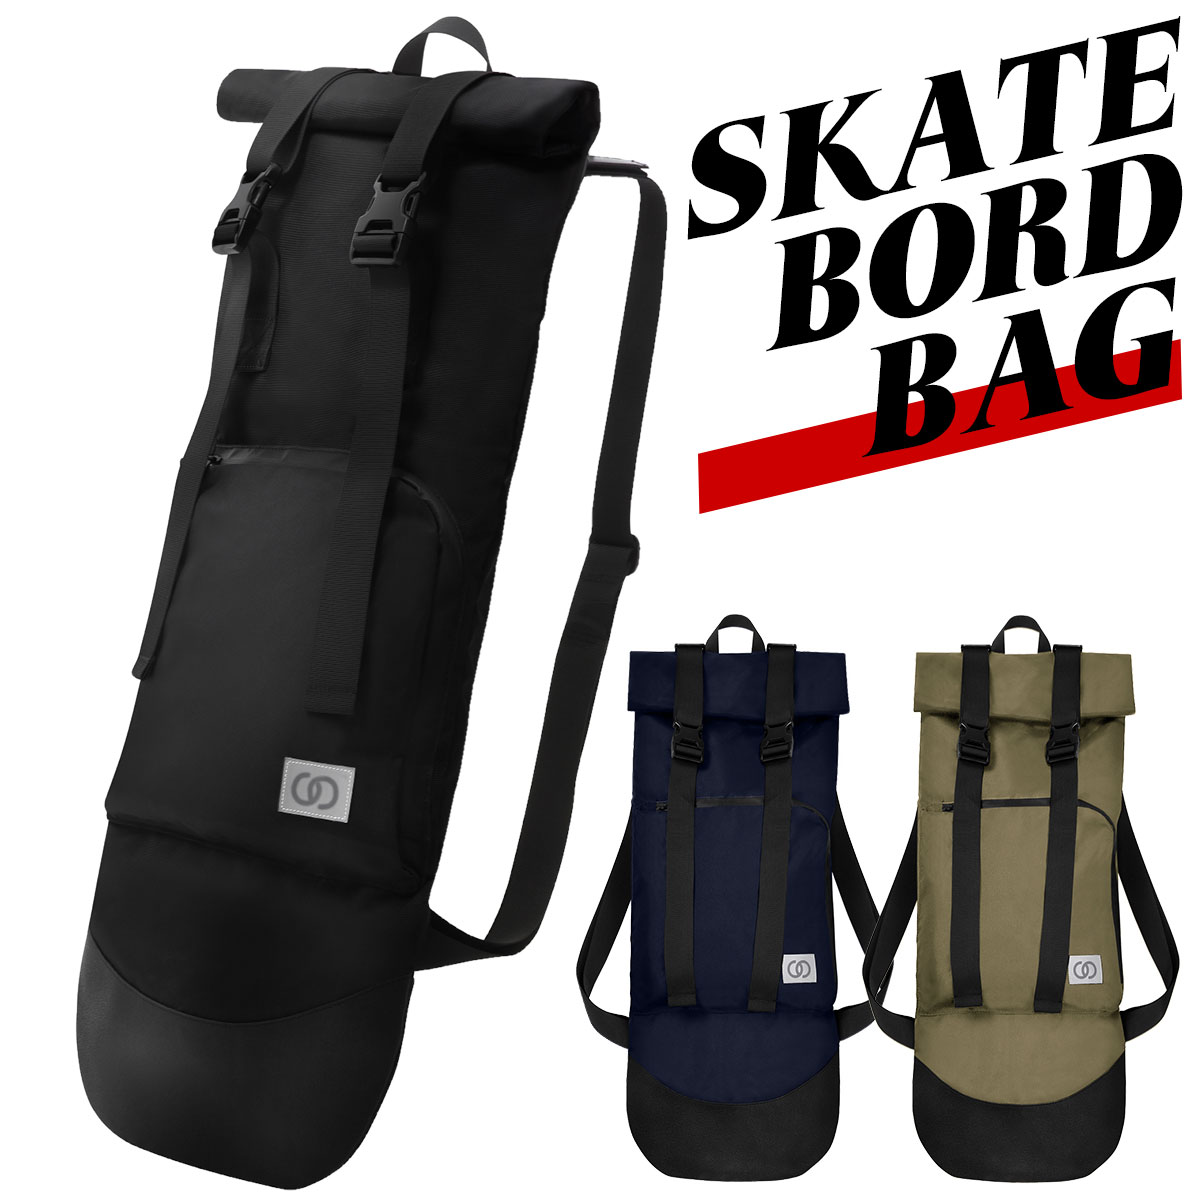 スケボー リュック ケース スケボーバッグ スケートボード バッグ パック ボード入れ 袋 リュックサック 収納 入れ物 バックパック 持ち運び スケボー